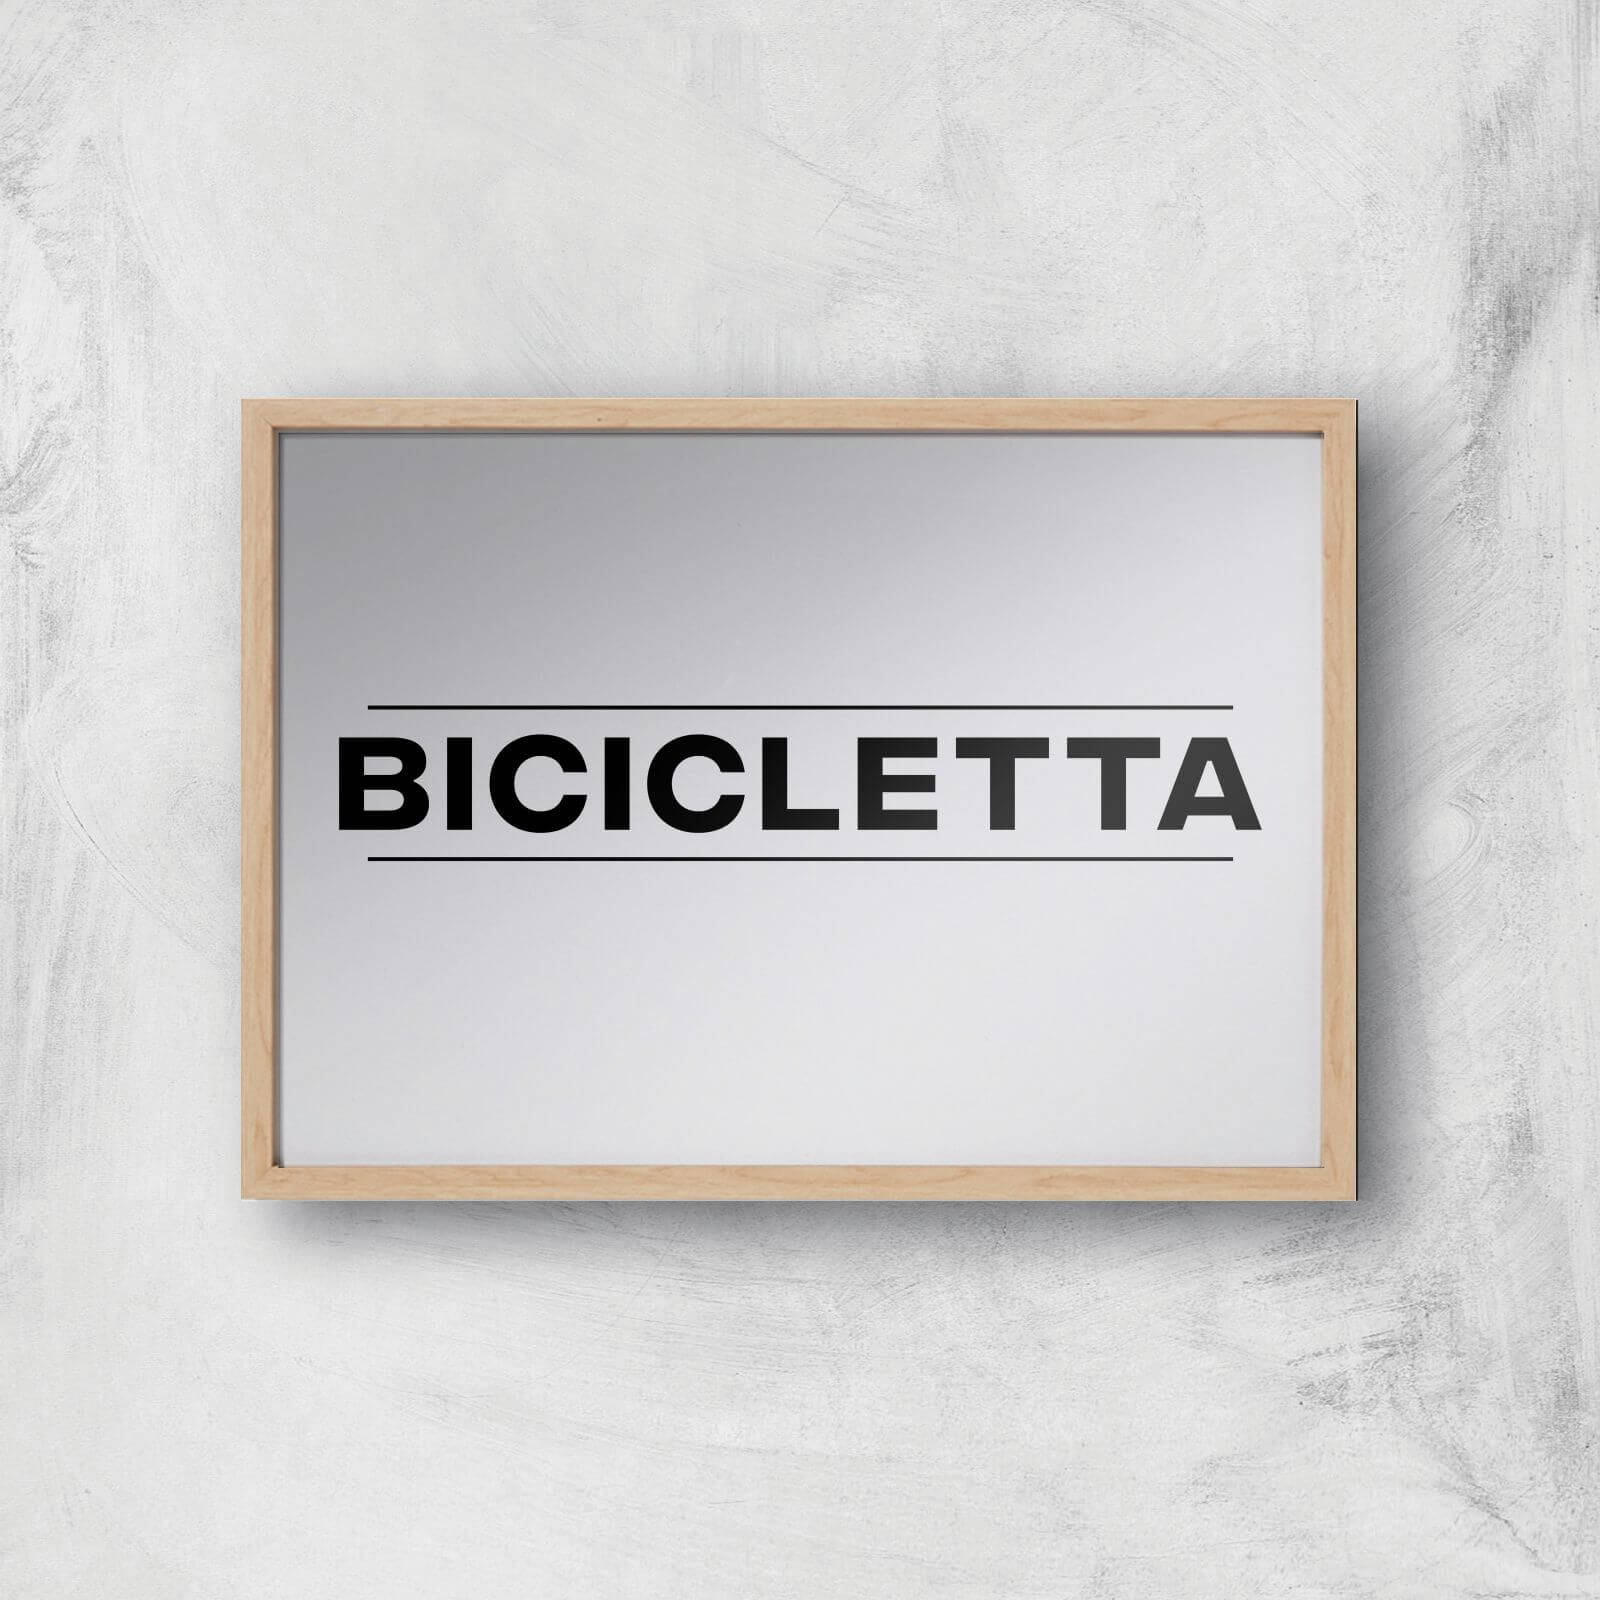 PBK Bicicletta Giclee Art Print - A3 - Wooden Frame